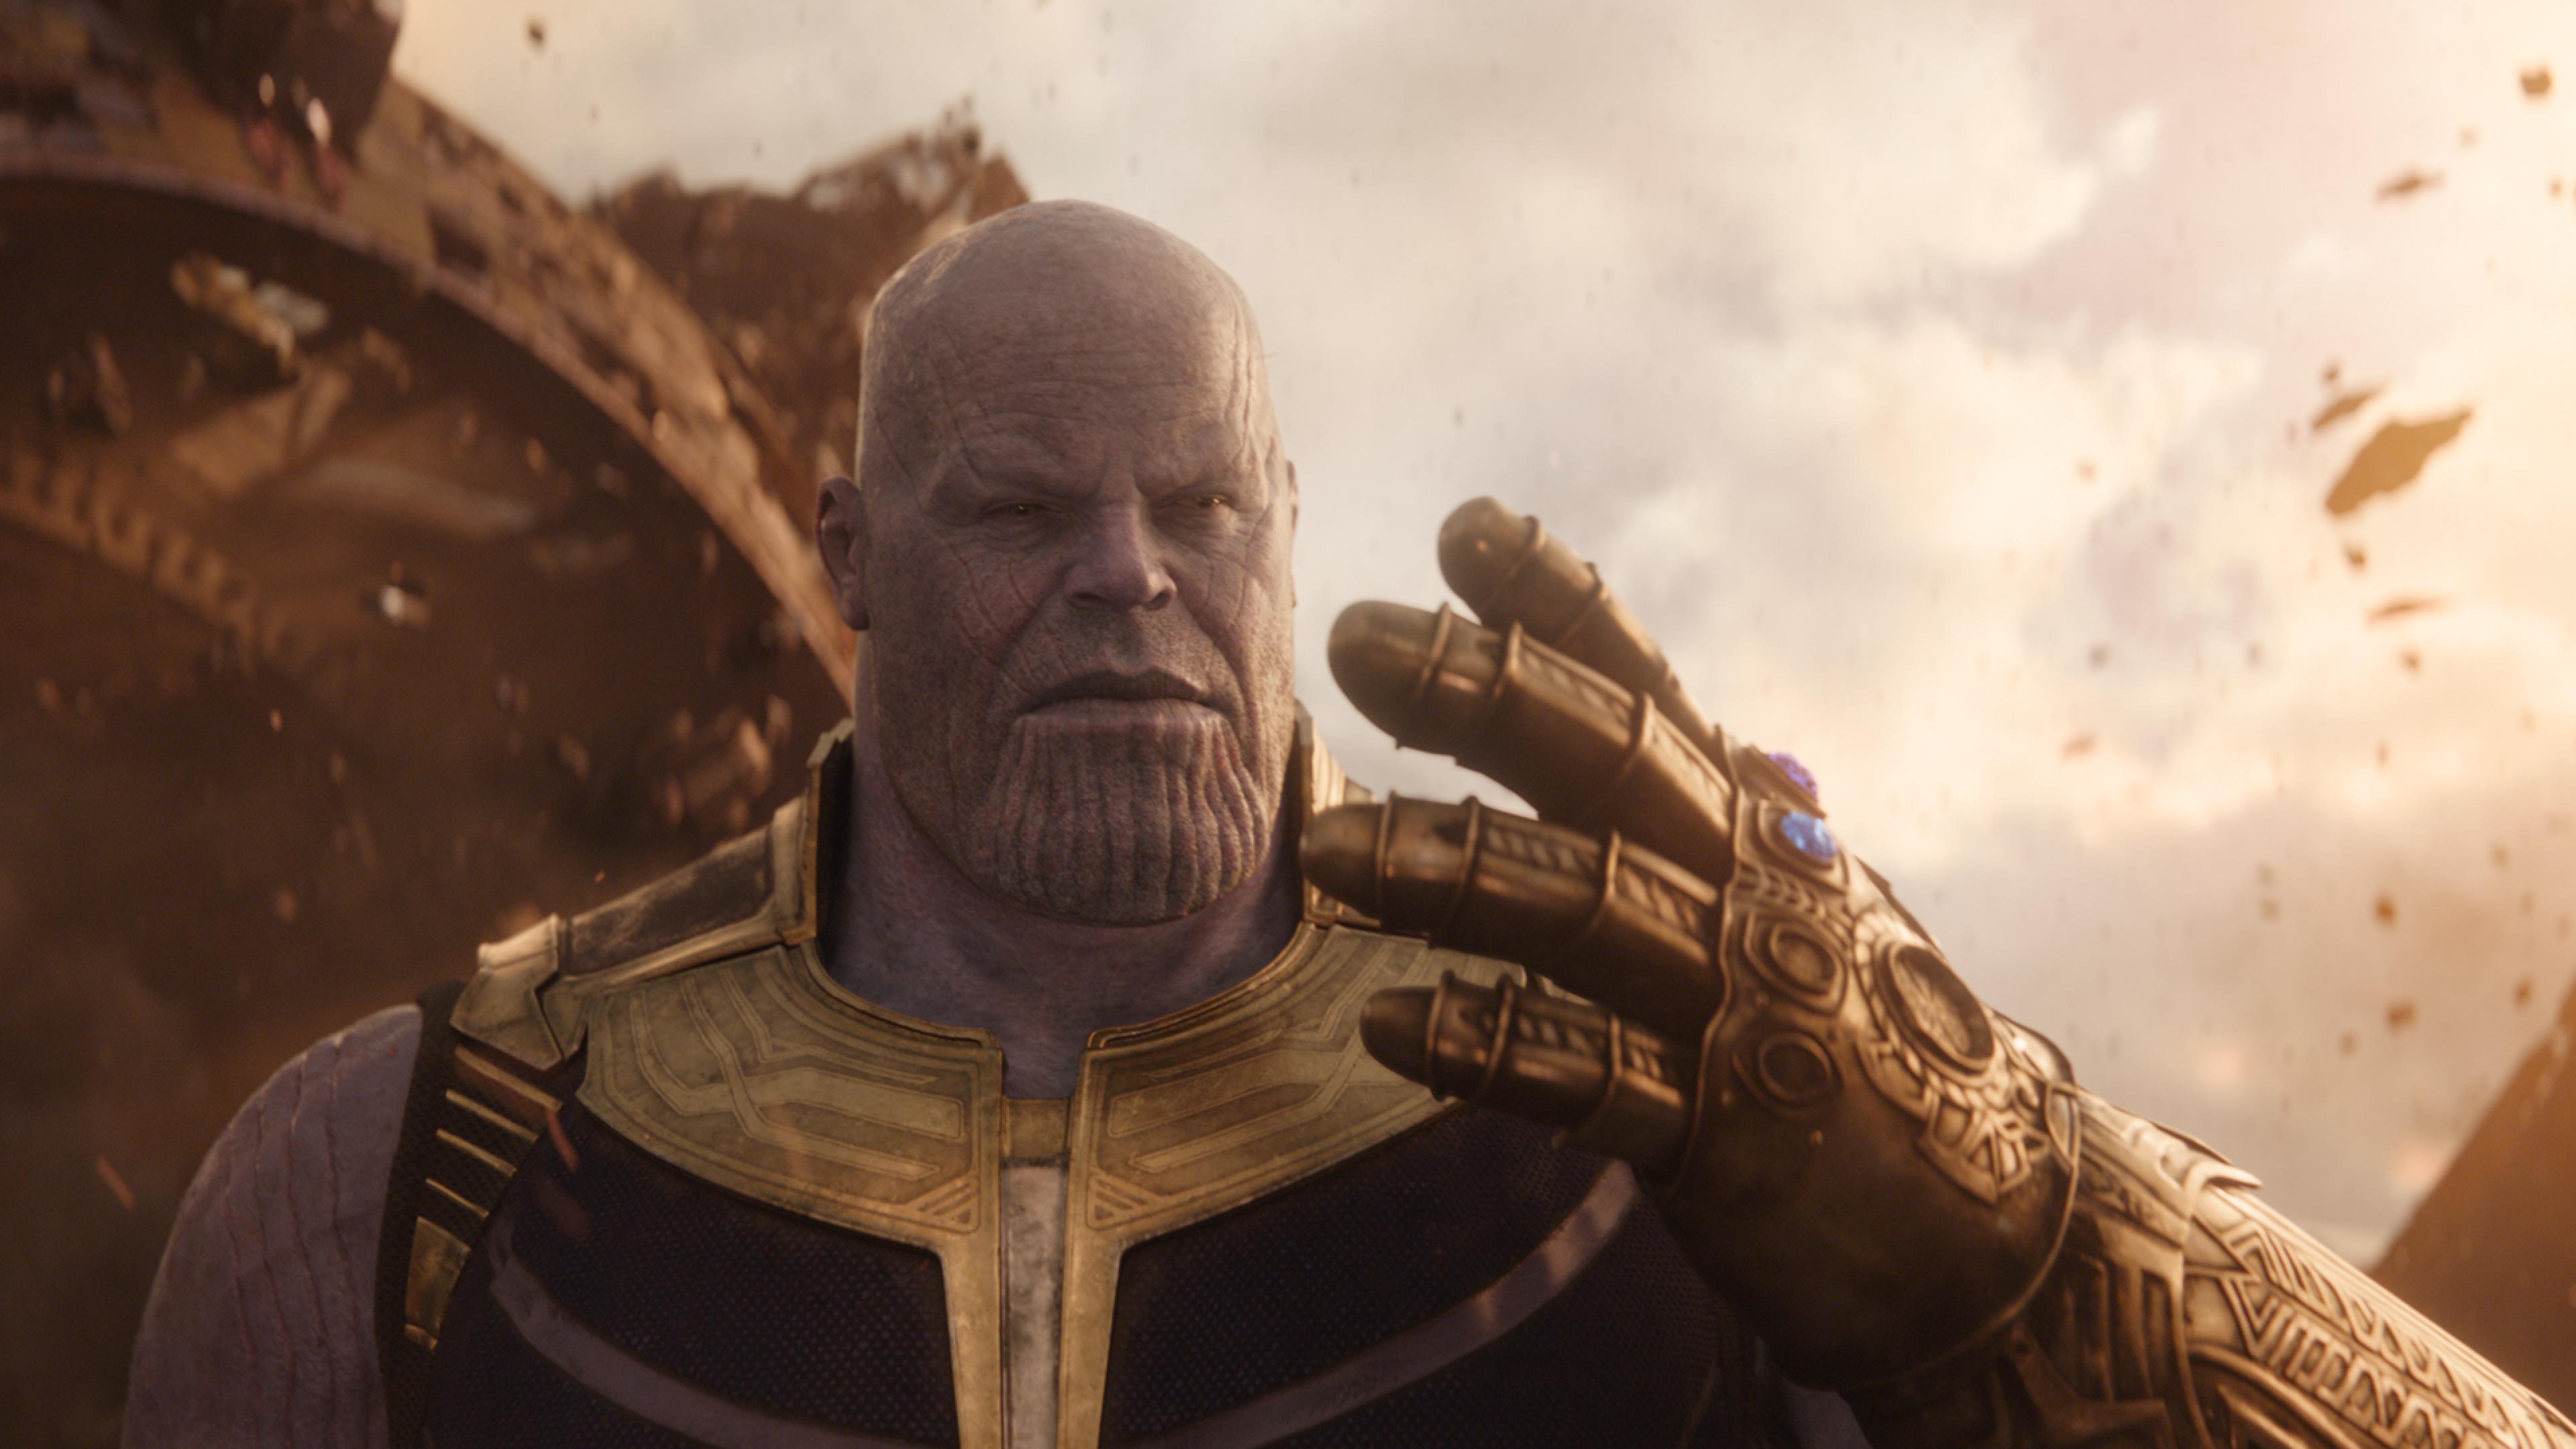 Avengers: Infinity War (2018) Thanos 4K UHD 16:9 3840x2160 Wallpaper